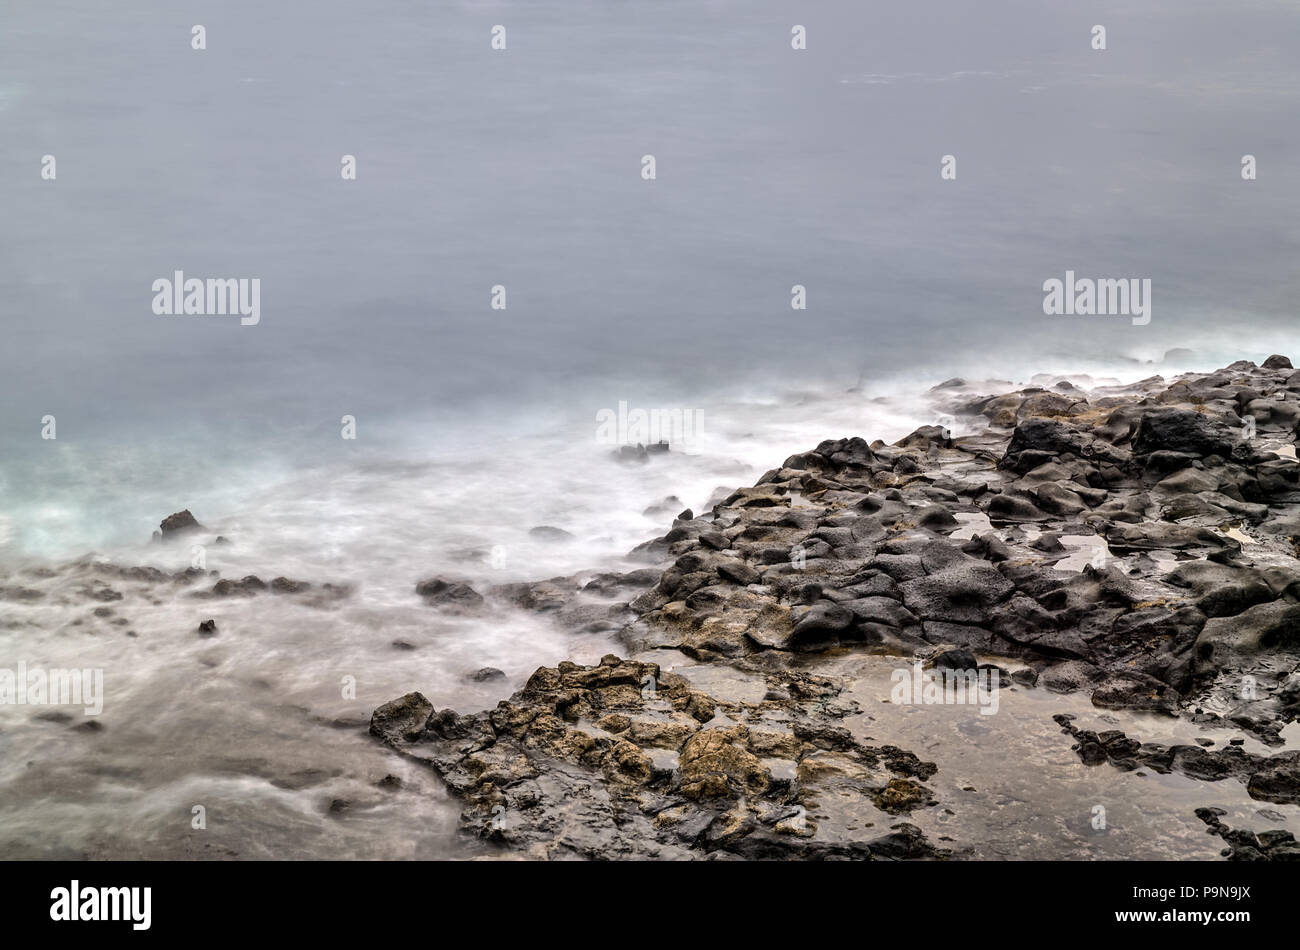 Una lunga esposizione fotografia di un roccioso riva del mare con spiaggia, pietre e le piscine incontro onde spettrale dell'oceano. Concetto di pace di serenità. Copia dello spazio. Foto Stock